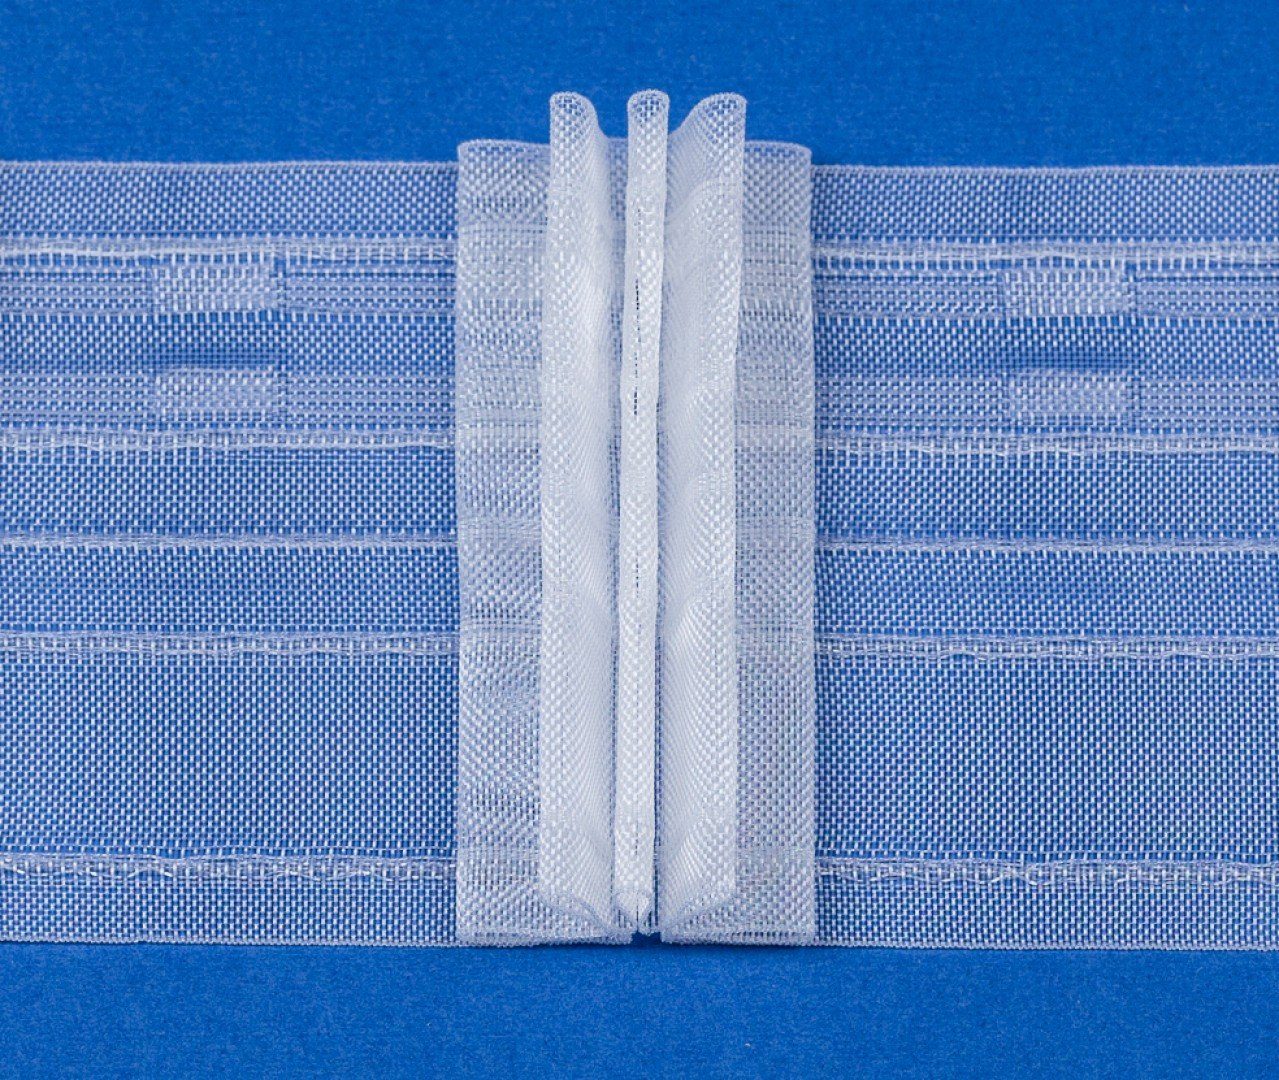 - / rewagi, L134, Farbe: Gardinenband, Breite: transparent Gardine Verkaufseinheit: 5 / Vorhang Stehfalten, 80 mm Meter